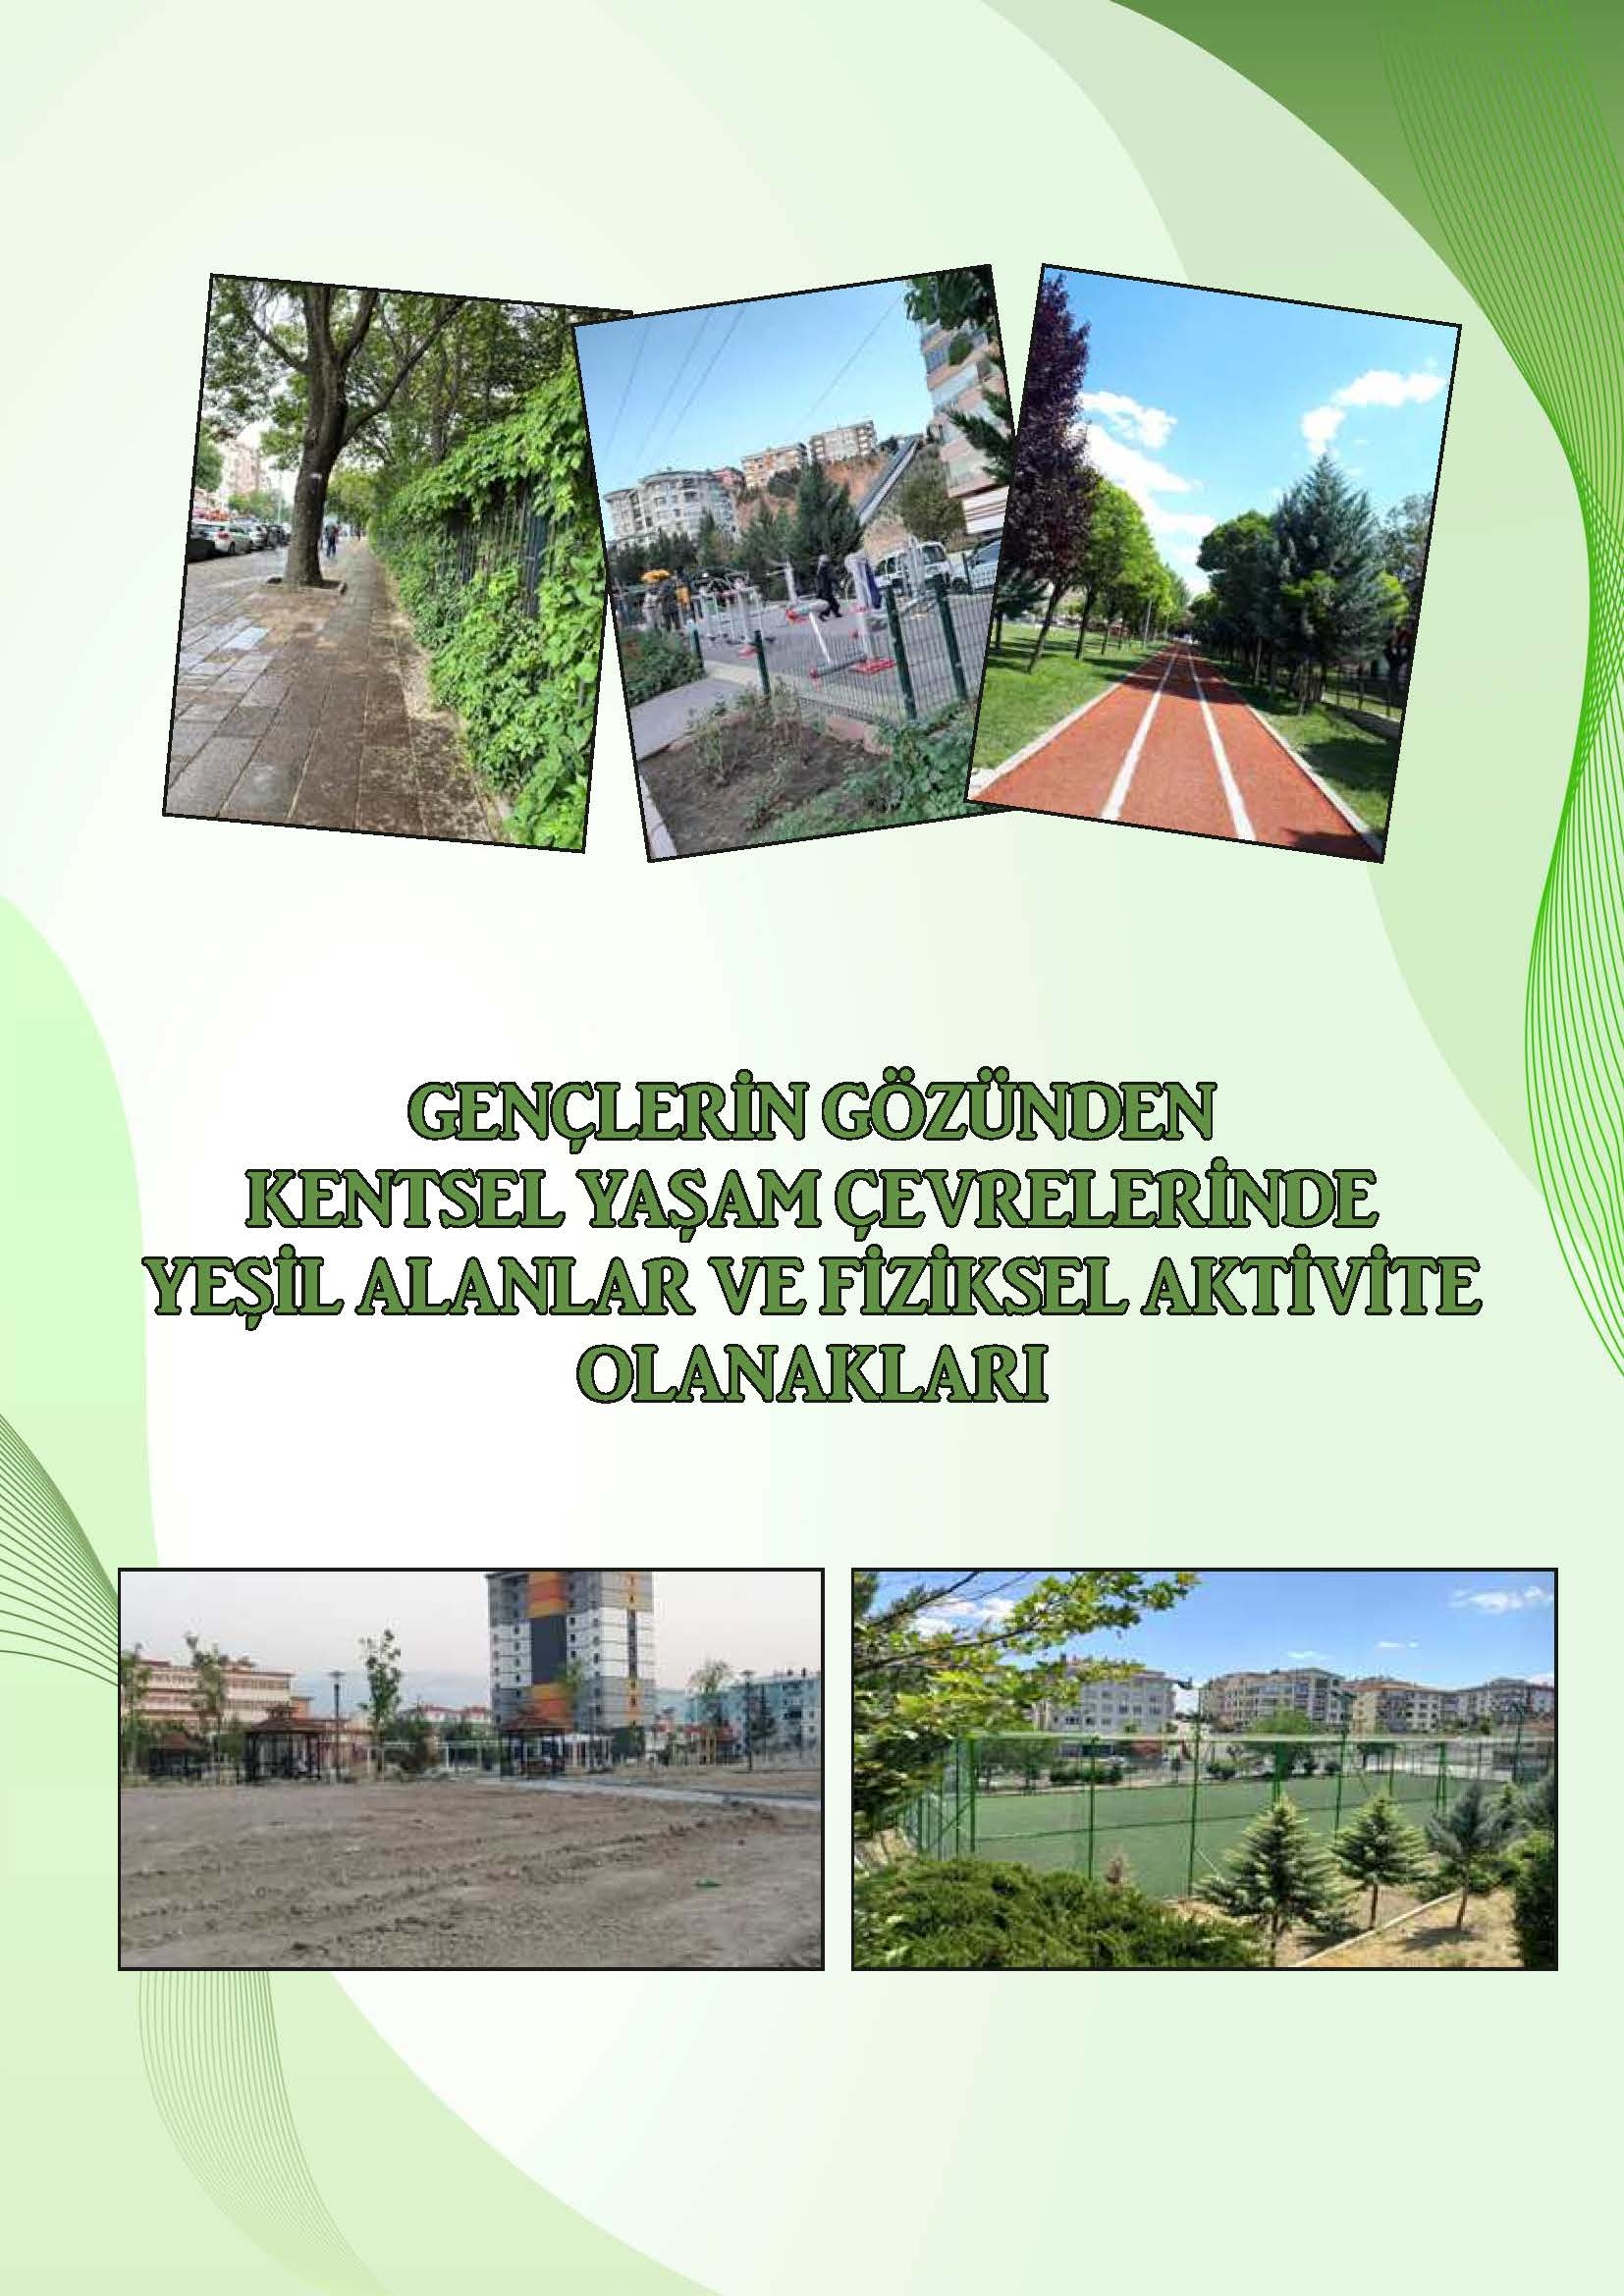 Gençlerin Gözünden Kentsel Yaşam Çevrelerinde  Yeşil Alanlar ve Fiziksel Aktivite Olanakları-1